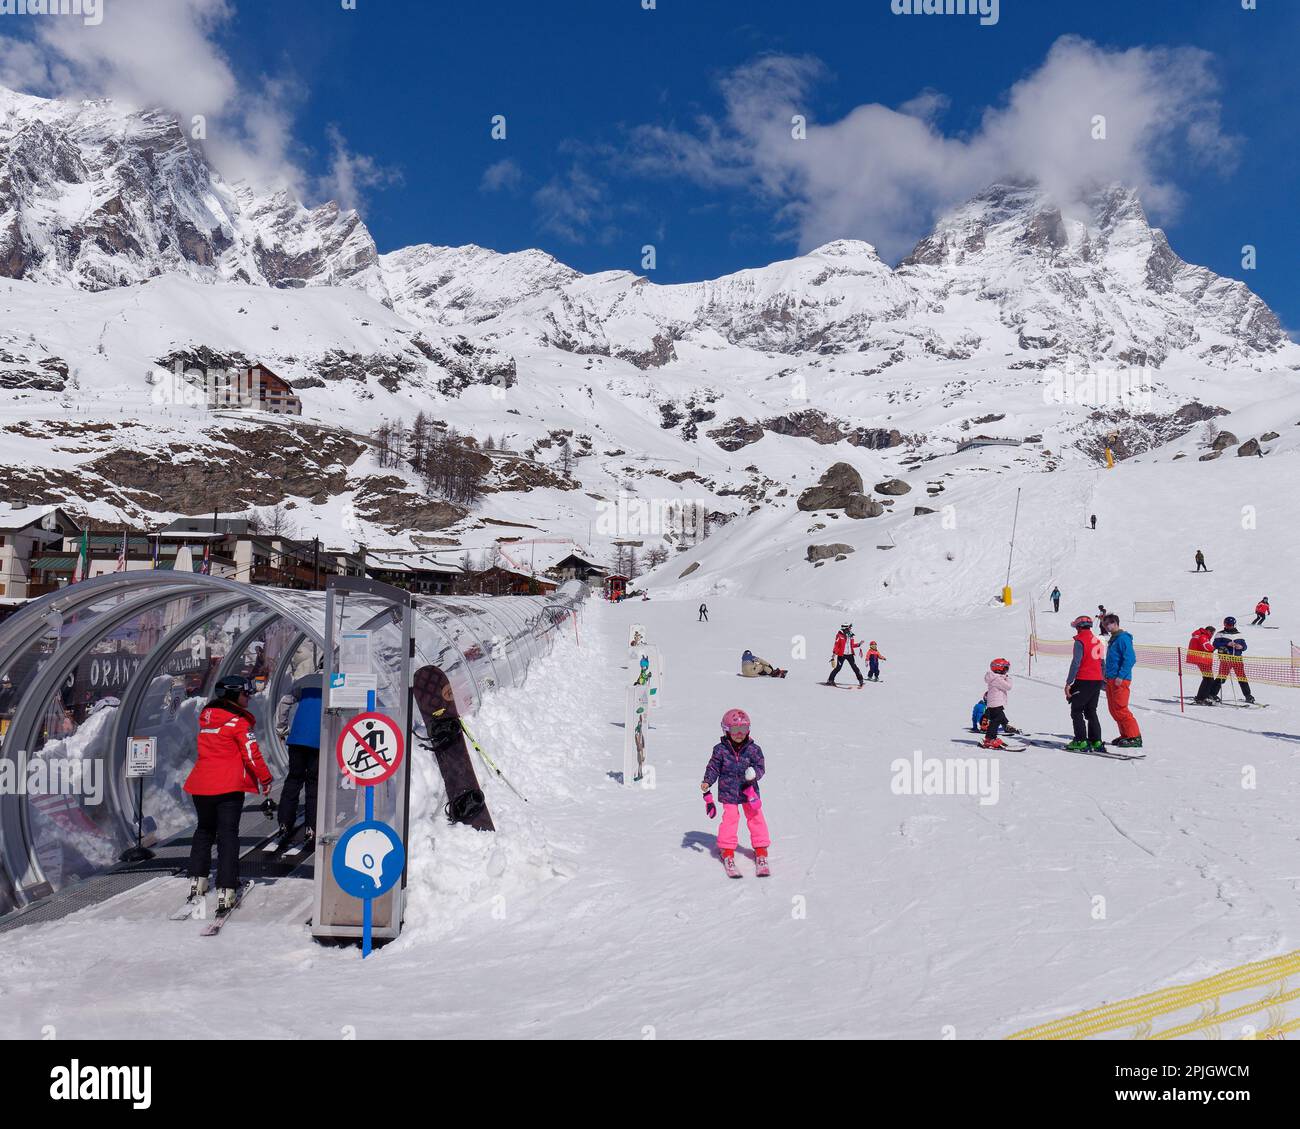 Skifahrer in der Säuglingsstation im Breuil-Cervinia, Aosta Valley Italien, mit einem mehrstufigen Skilift und dem schneebedeckten Cervino Berg, auch bekannt als Matterhorn, dahinter. Stockfoto